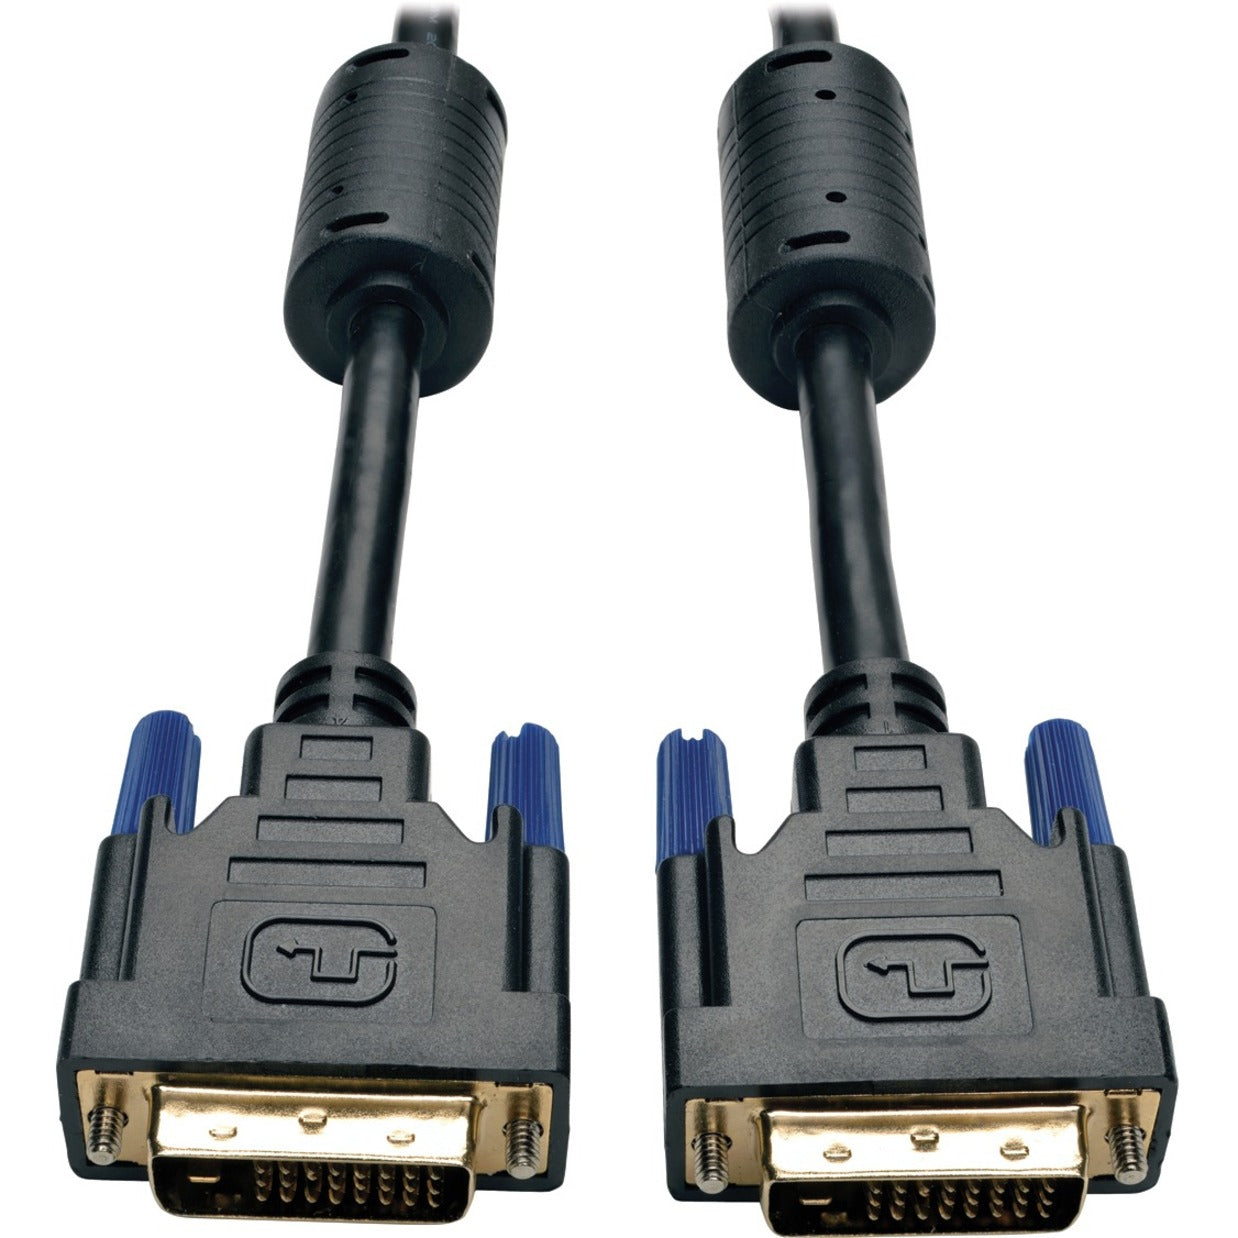 Tripp Lite P560-001 1-ft. DVI Dual Link TMDS Câble Moulé Conducteur en Cuivre Blindé Connecteurs Plaqués Or Longueur de 1 pied Noir